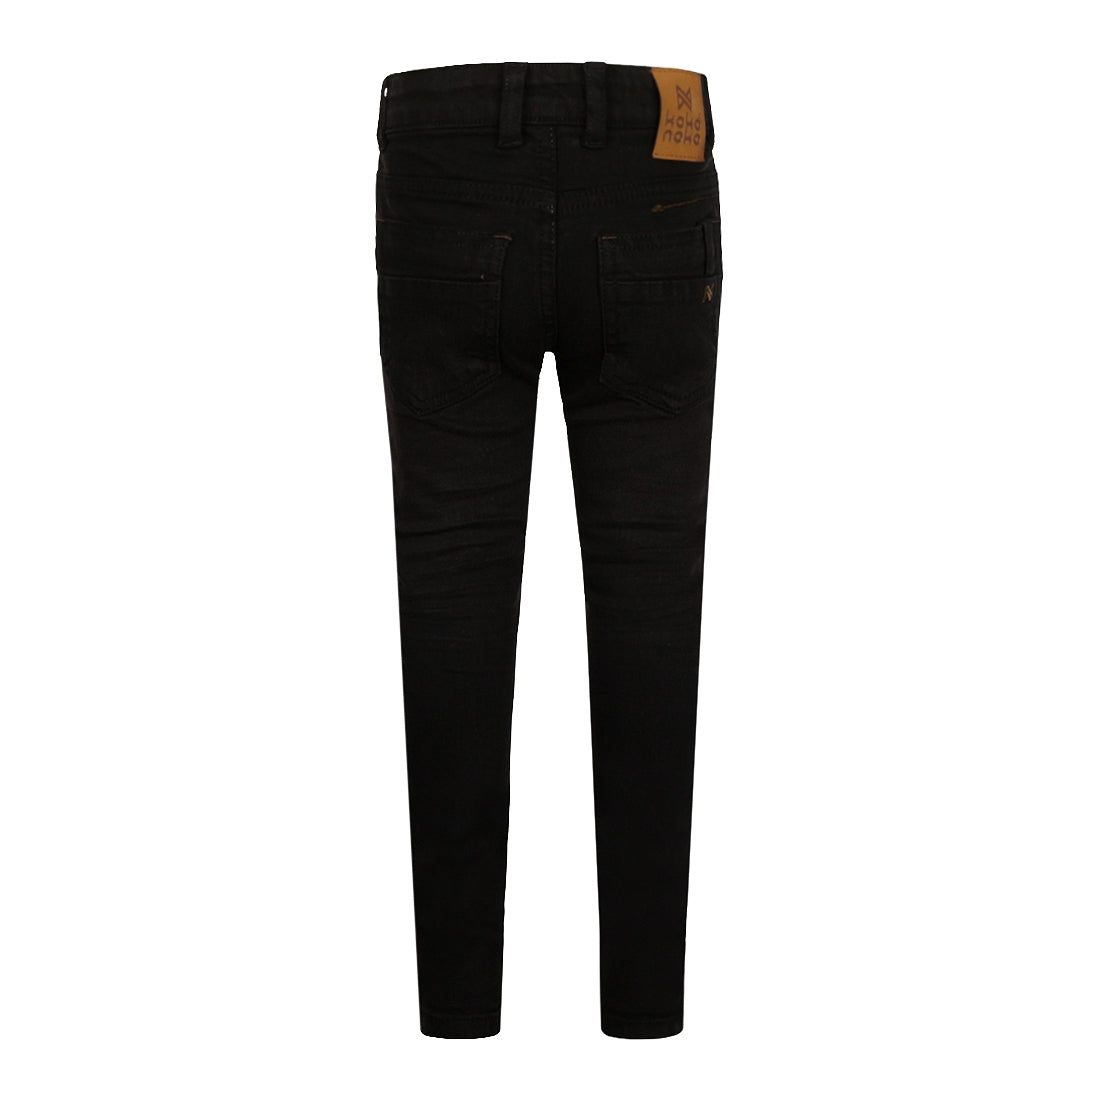 Jongens Jeans Skinny van Koko Noko in de kleur Black jeans in maat 128.